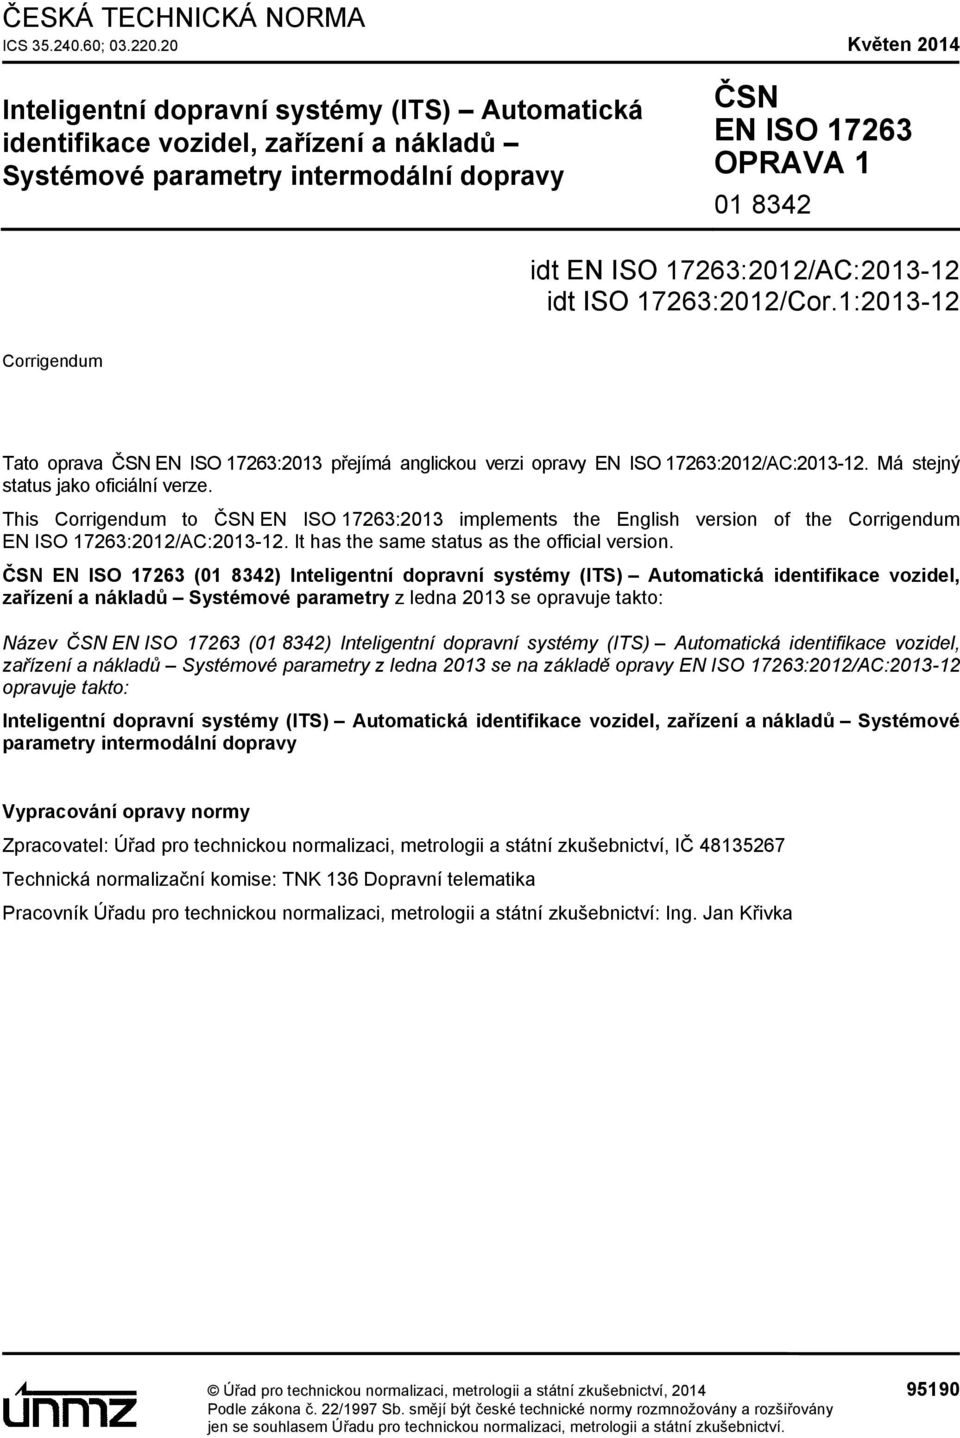 17263:2012/AC:2013-12 idt ISO 17263:2012/Cor.1:2013-12 Corrigendum Tato oprava ČSN EN ISO 17263:2013 přejímá anglickou verzi opravy EN ISO 17263:2012/AC:2013-12. Má stejný status jako oficiální verze.